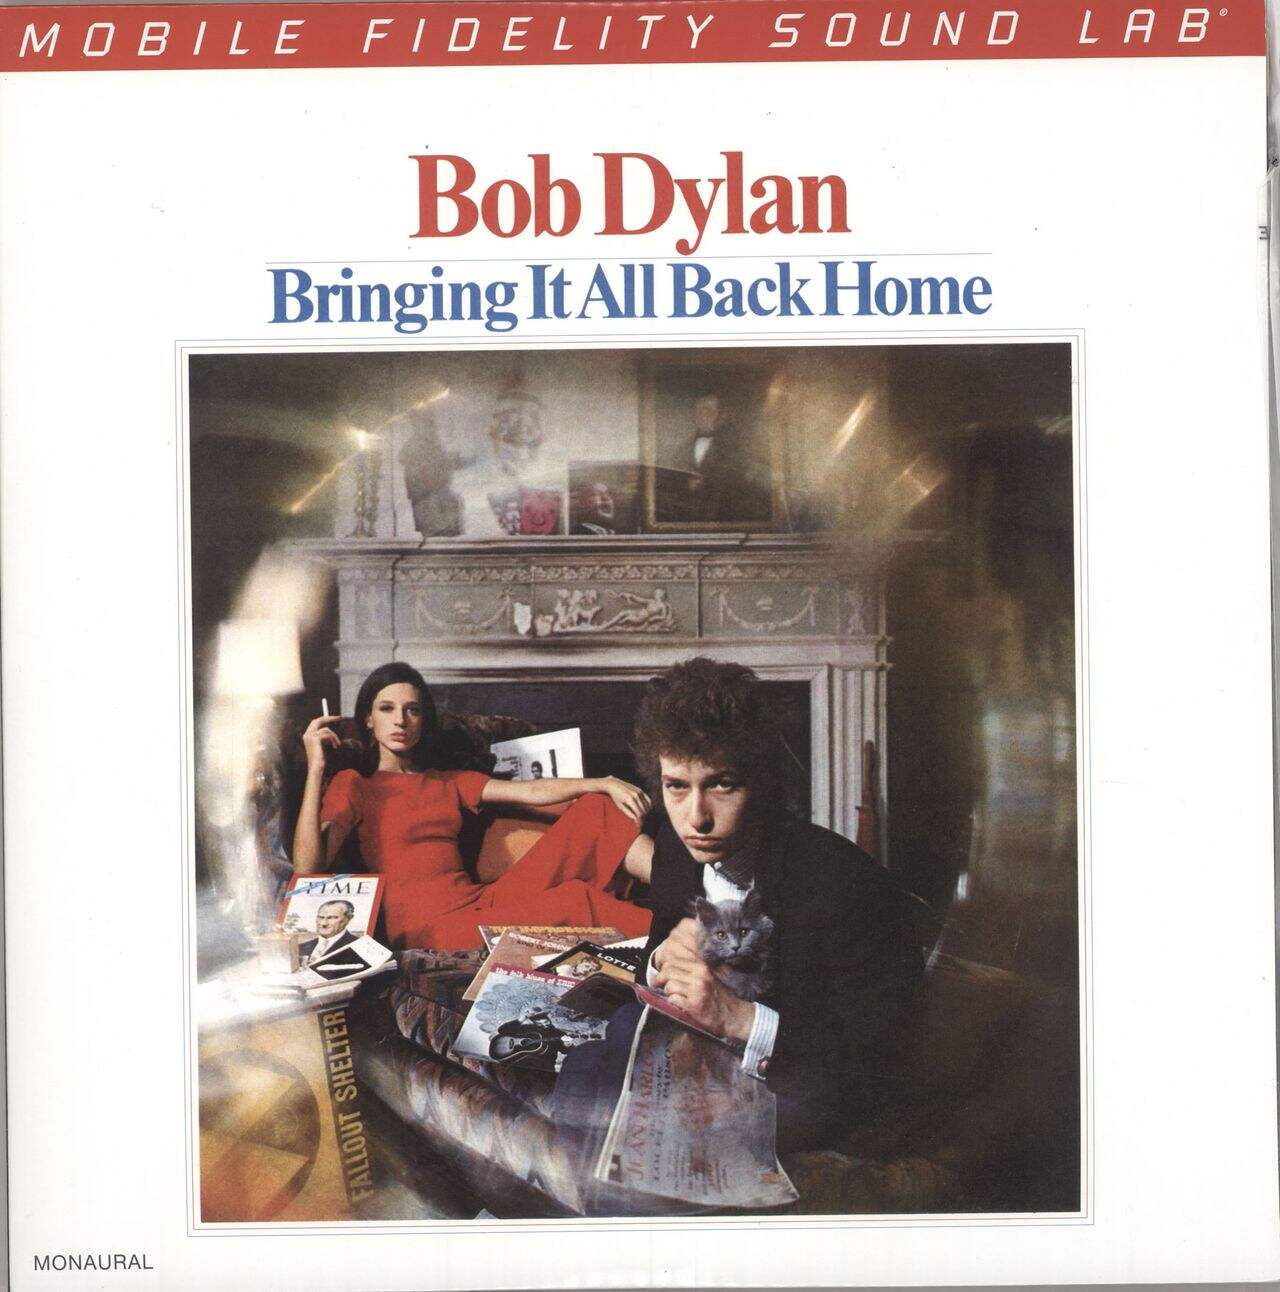 Bob Dylan Bringing It All Back Home - 180gm 45rpm US 2-LP vinyl set